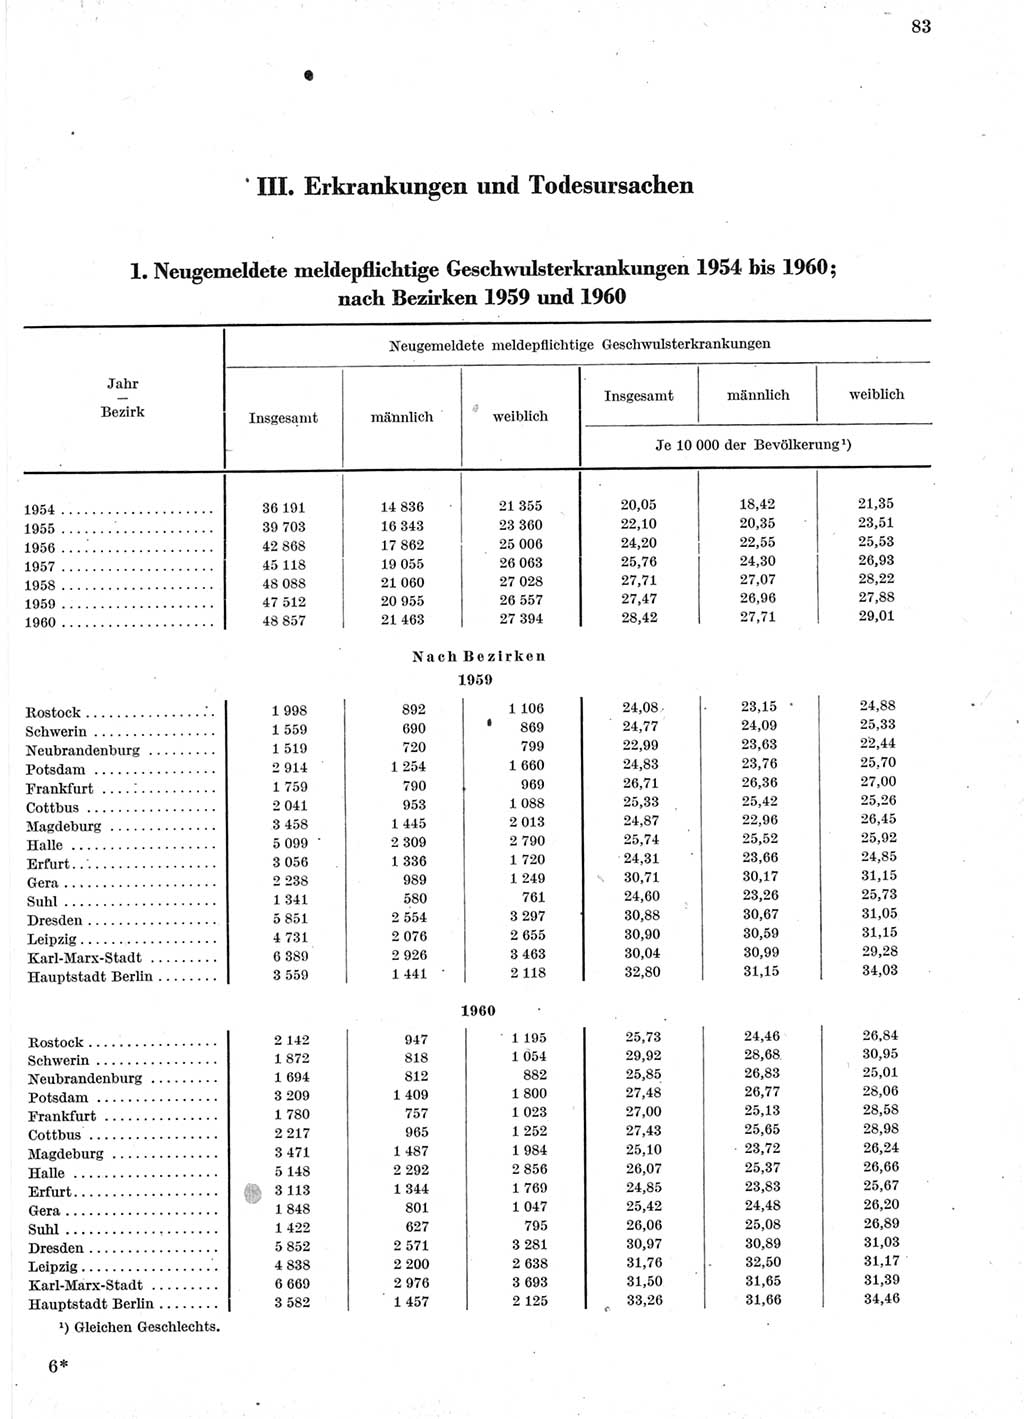 Statistisches Jahrbuch der Deutschen Demokratischen Republik (DDR) 1960-1961, Seite 83 (Stat. Jb. DDR 1960-1961, S. 83)